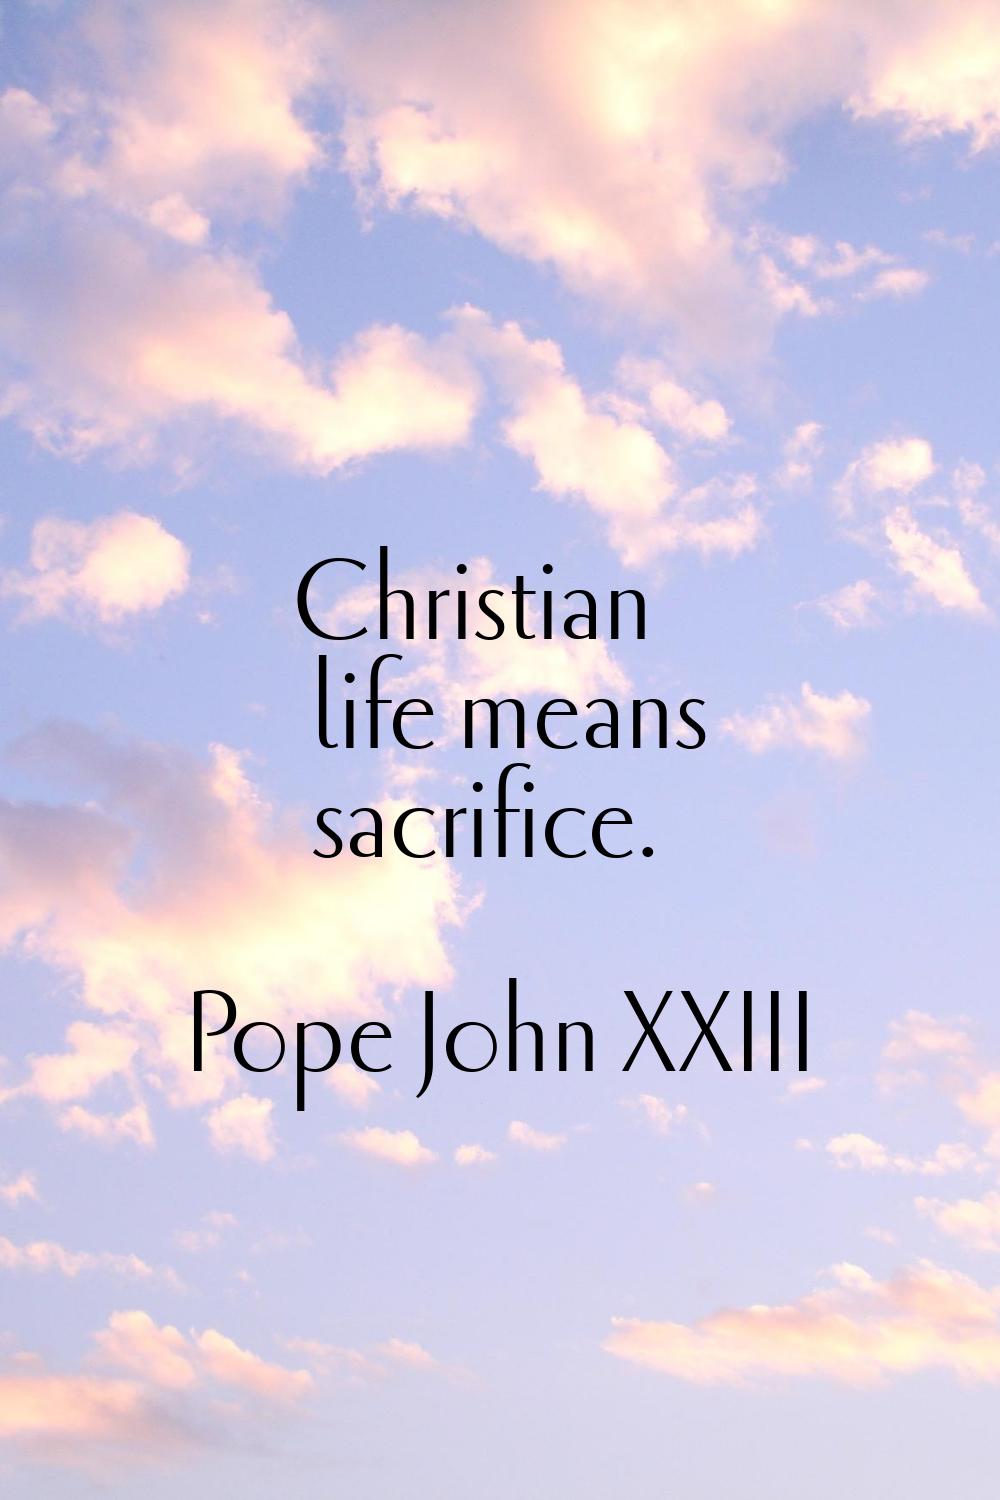 Christian life means sacrifice.